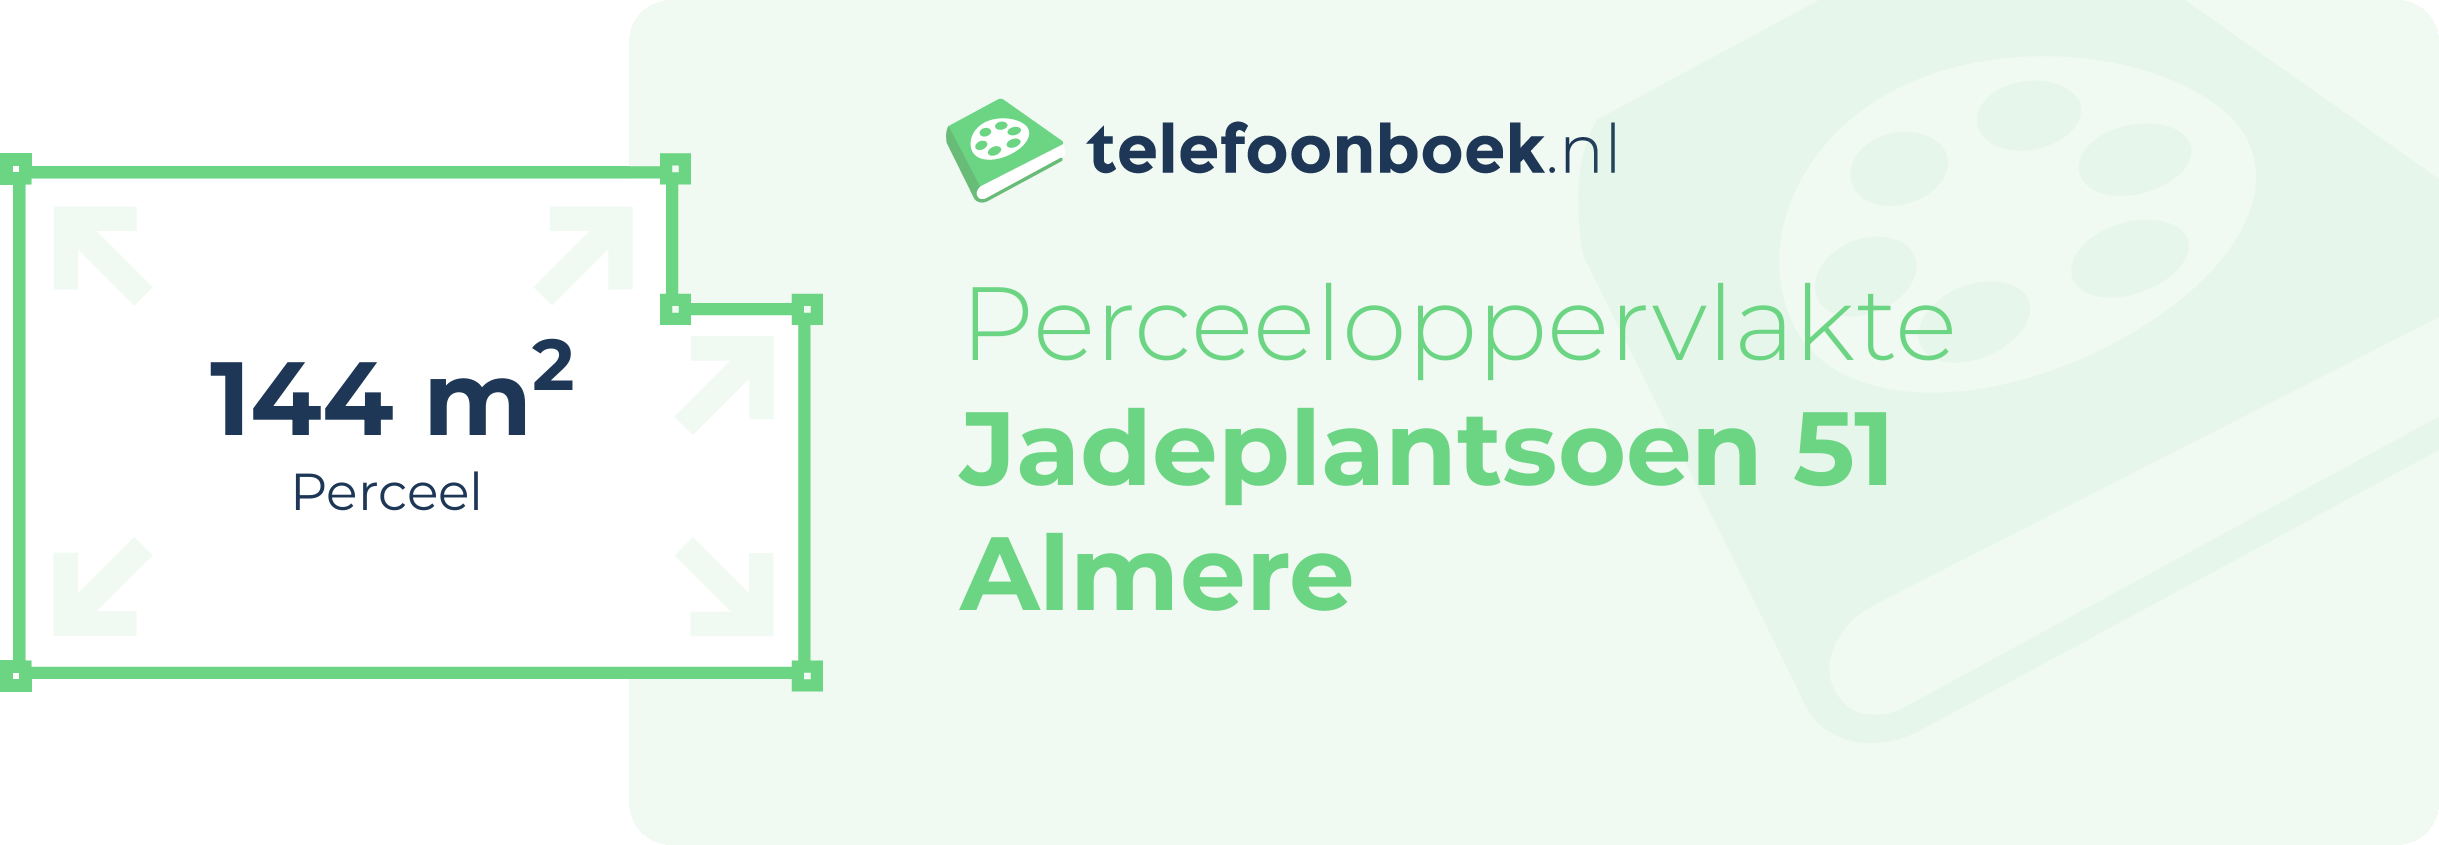 Perceeloppervlakte Jadeplantsoen 51 Almere